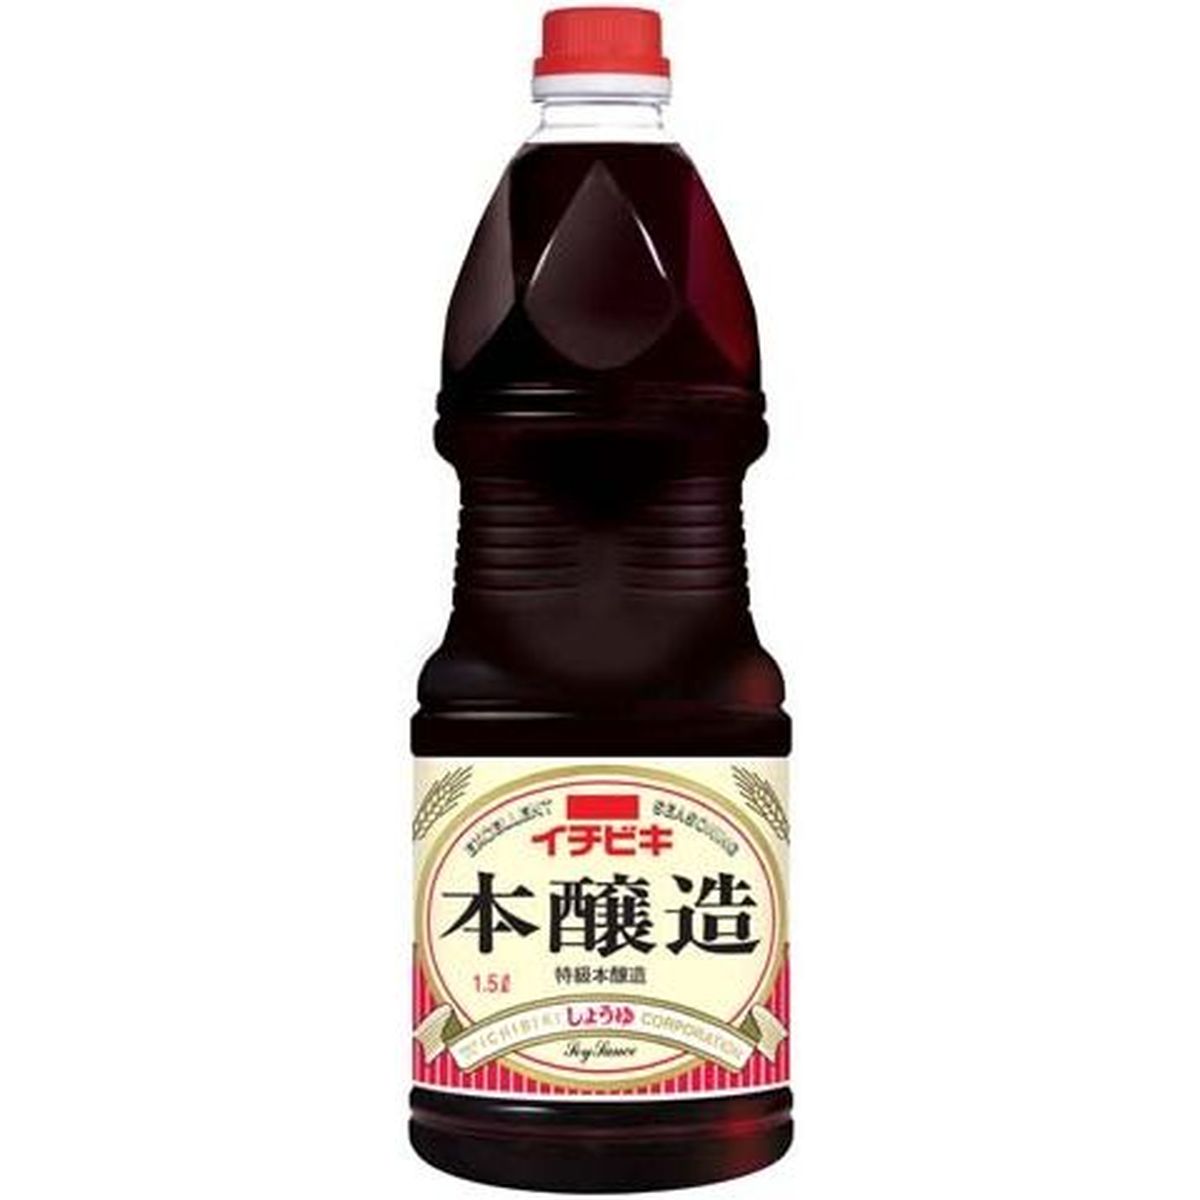 【6個入リ】イチビキ 本醸造ショウユ グリップパック 1.5L